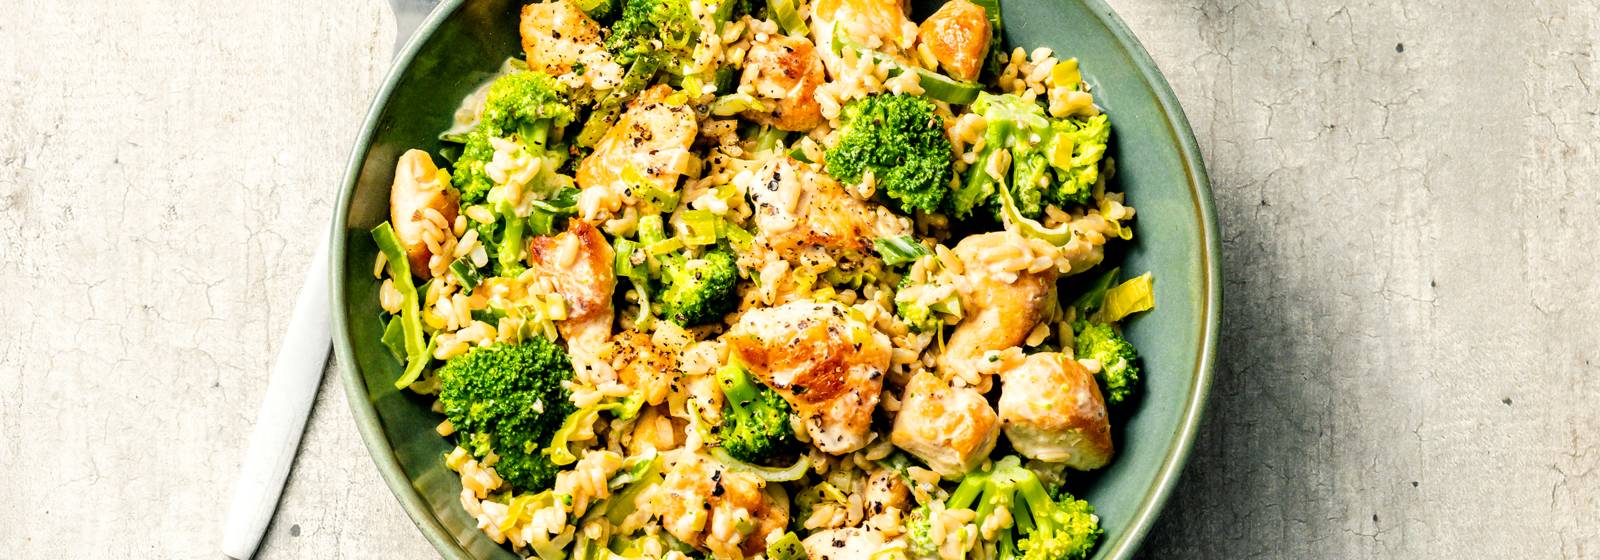 Romige kip met broccoli prei en rijst